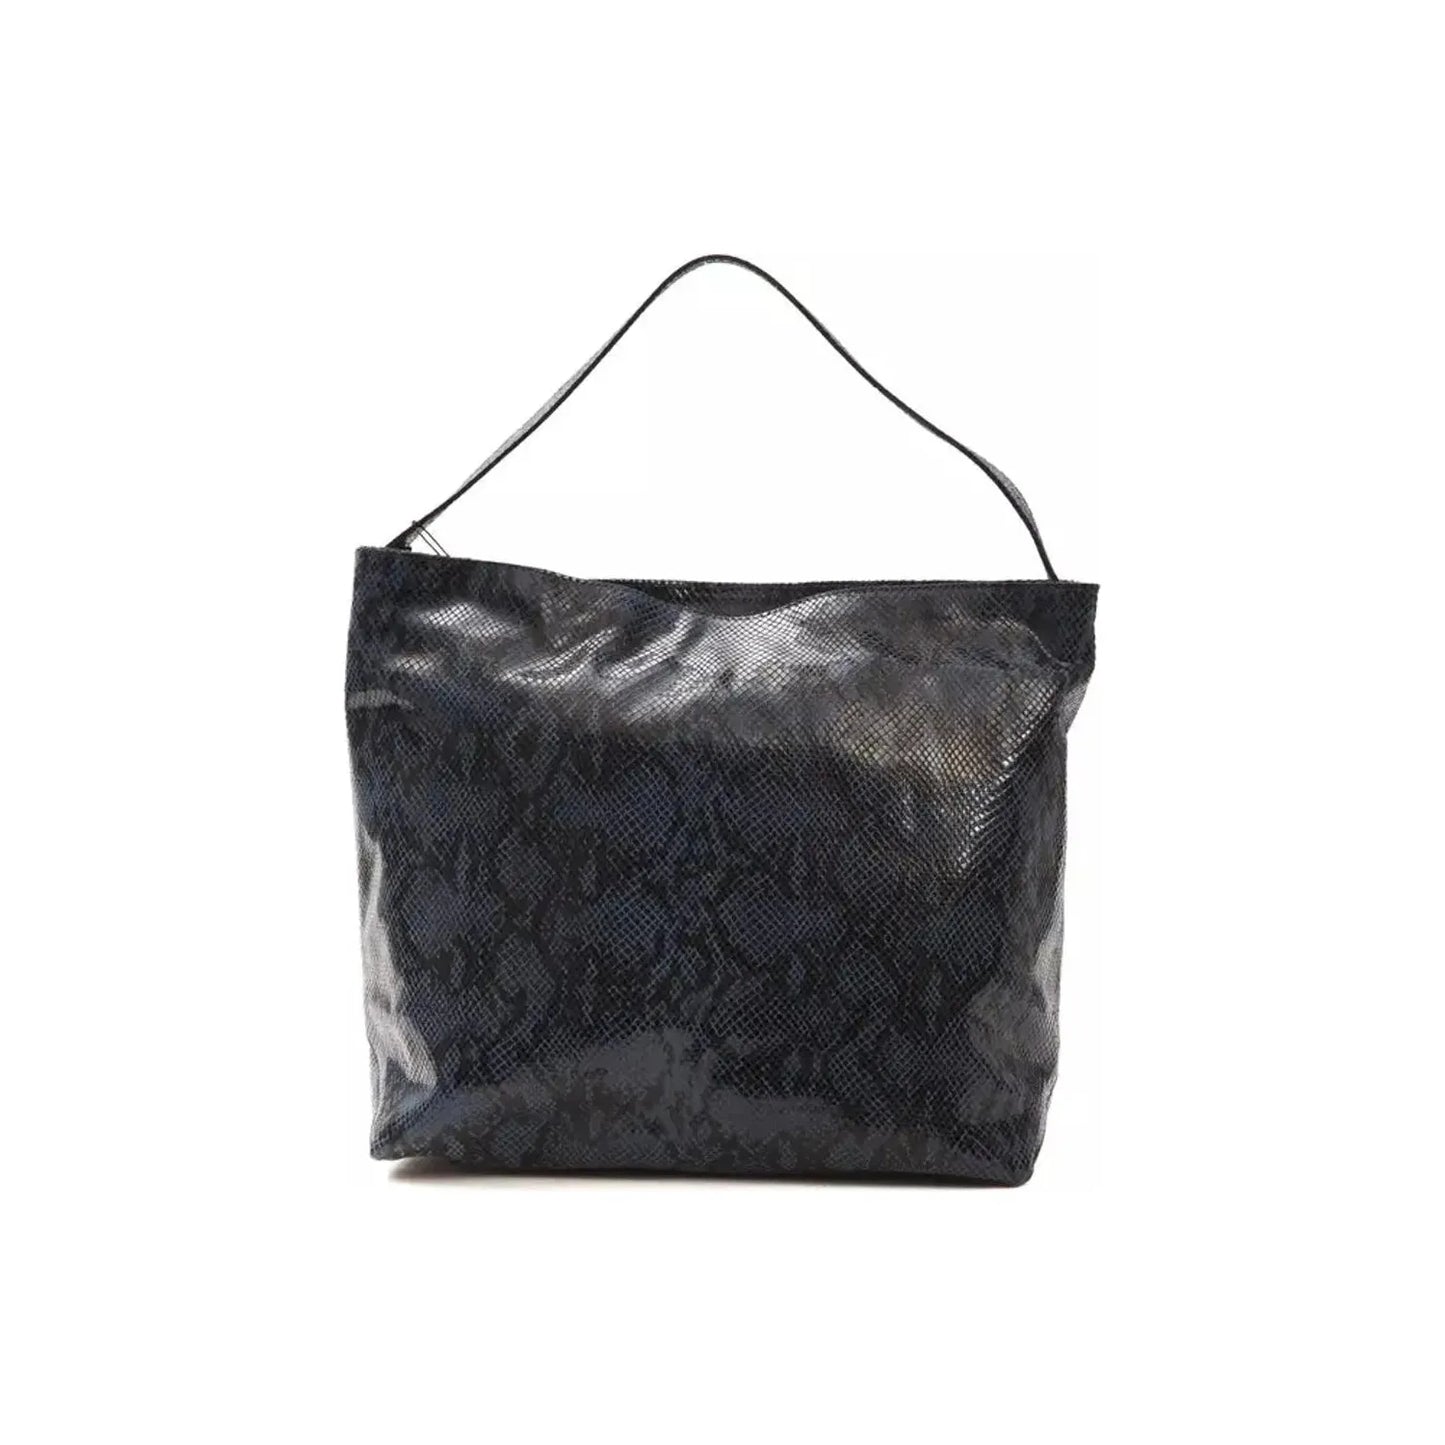 Pompei Donatella Elegant Blue Python Print Leather Shoulder Bag WOMAN SHOULDER BAGS blue-leather-shoulder-bag stock_product_image_5786_1991412582-20-f72af999-ddd.webp